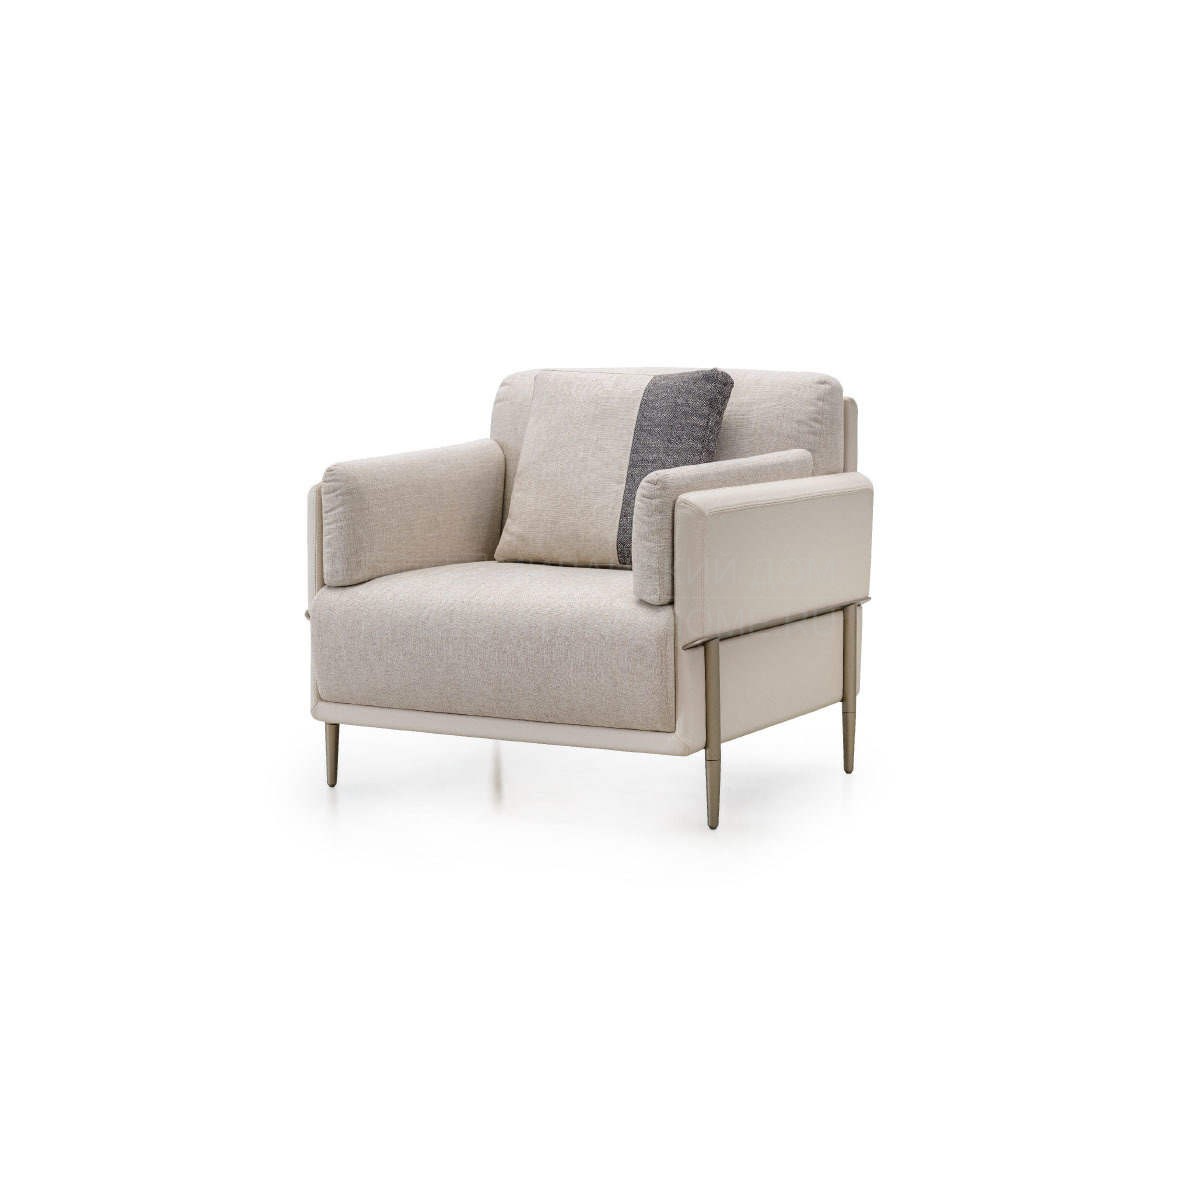 Кресло Zero armchair из Италии фабрики TURRI